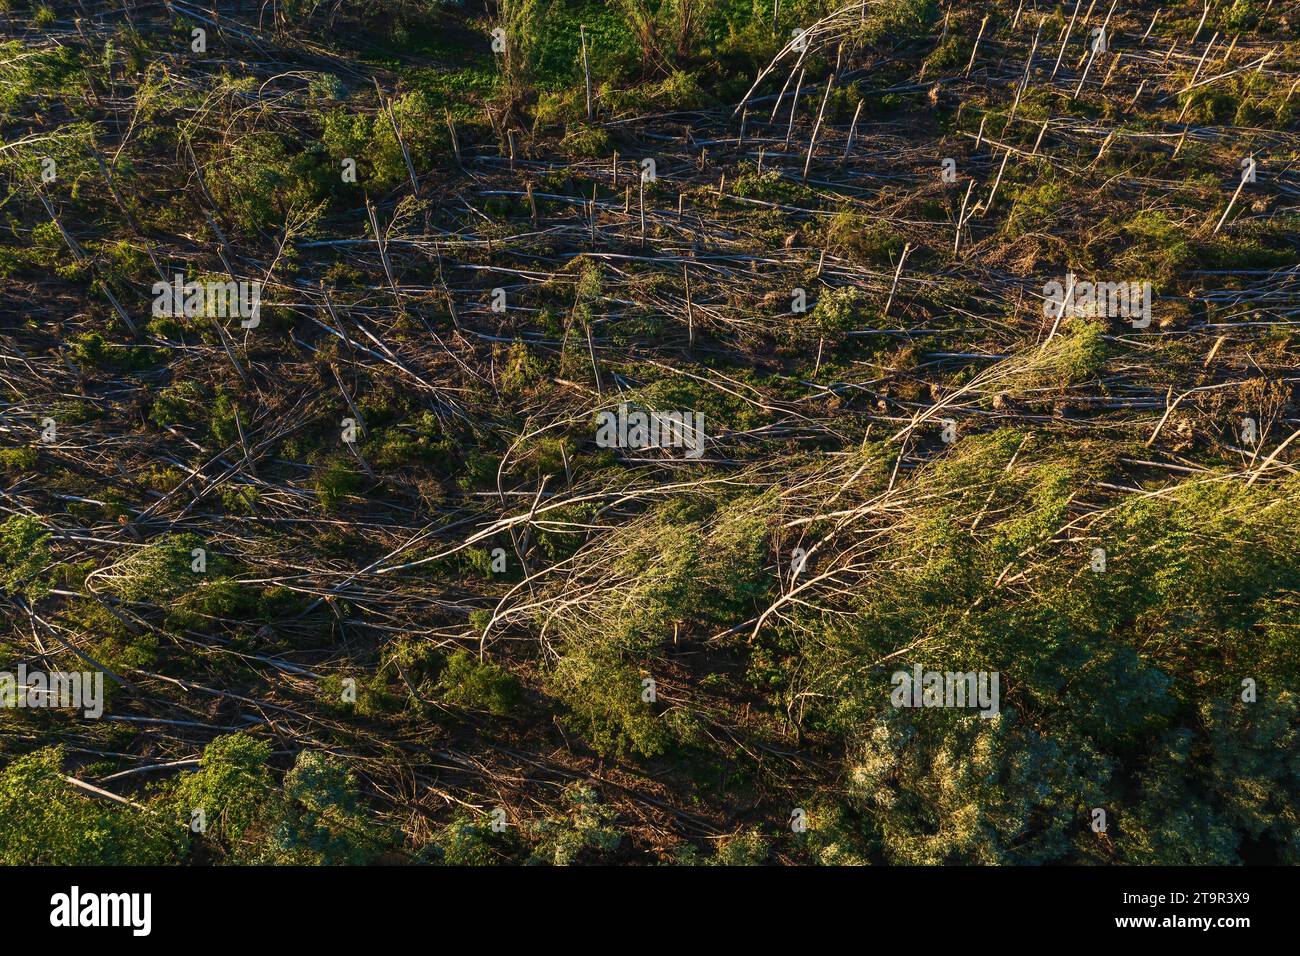 Vue aérienne du paysage forestier dévasté après une tempête supercellulaire en été, prise de vue par drone du paysage de dommages environnementaux depuis le haut Banque D'Images